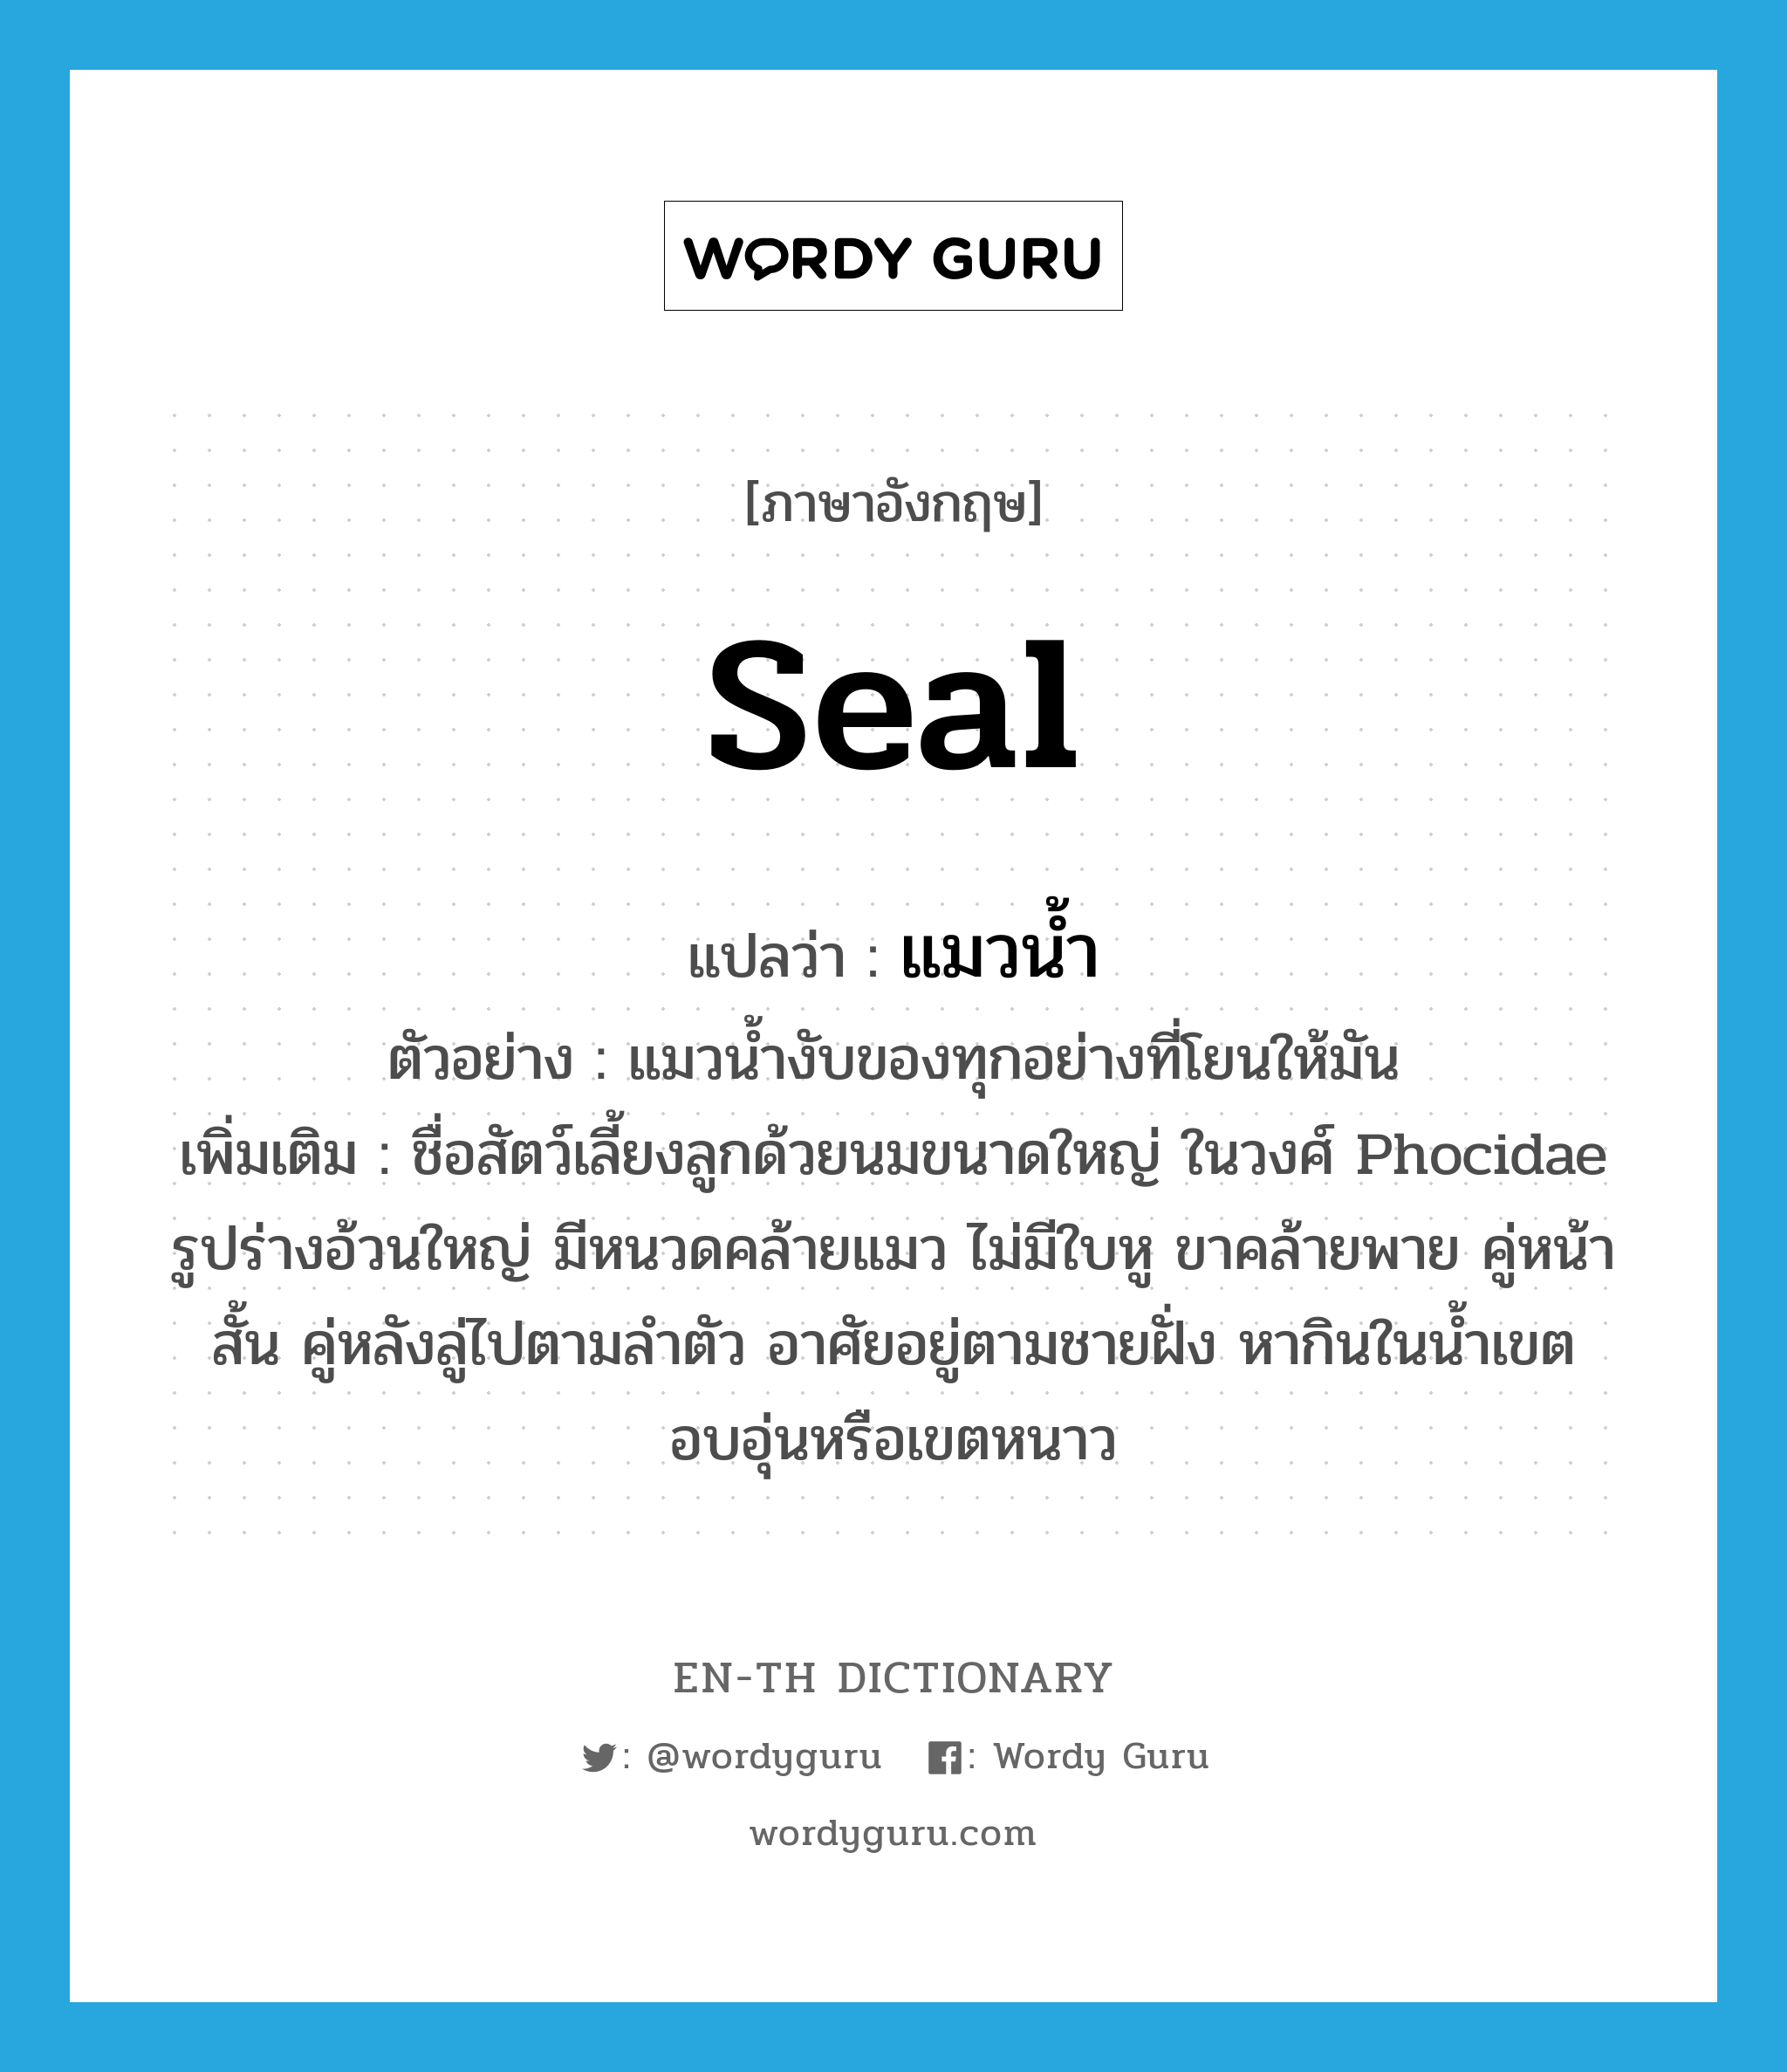 seal แปลว่า?, คำศัพท์ภาษาอังกฤษ seal แปลว่า แมวน้ำ ประเภท N ตัวอย่าง แมวน้ำงับของทุกอย่างที่โยนให้มัน เพิ่มเติม ชื่อสัตว์เลี้ยงลูกด้วยนมขนาดใหญ่ ในวงศ์ Phocidae รูปร่างอ้วนใหญ่ มีหนวดคล้ายแมว ไม่มีใบหู ขาคล้ายพาย คู่หน้าสั้น คู่หลังลู่ไปตามลำตัว อาศัยอยู่ตามชายฝั่ง หากินในน้ำเขตอบอุ่นหรือเขตหนาว หมวด N